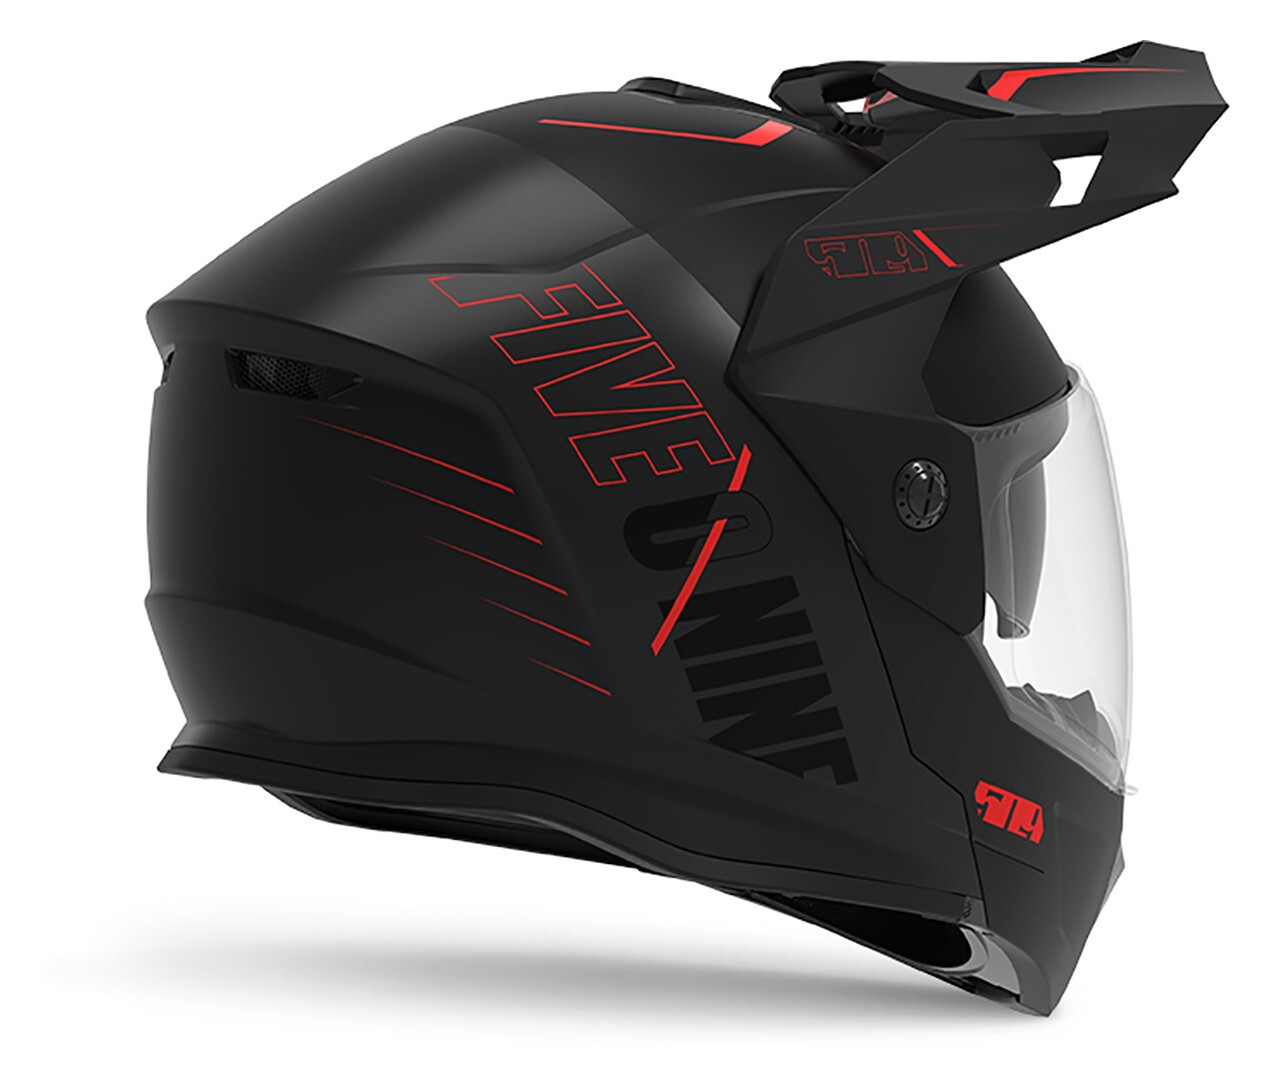 92 Off 509 Delta R4 Ignite Helmet Electric Shield フルフェイスヘルメット シールド付 オフロードヘルメット アドベンチャー バイク ライダー ツーリングにも かっこいい おすすめ Amaclub Fucoa Cl